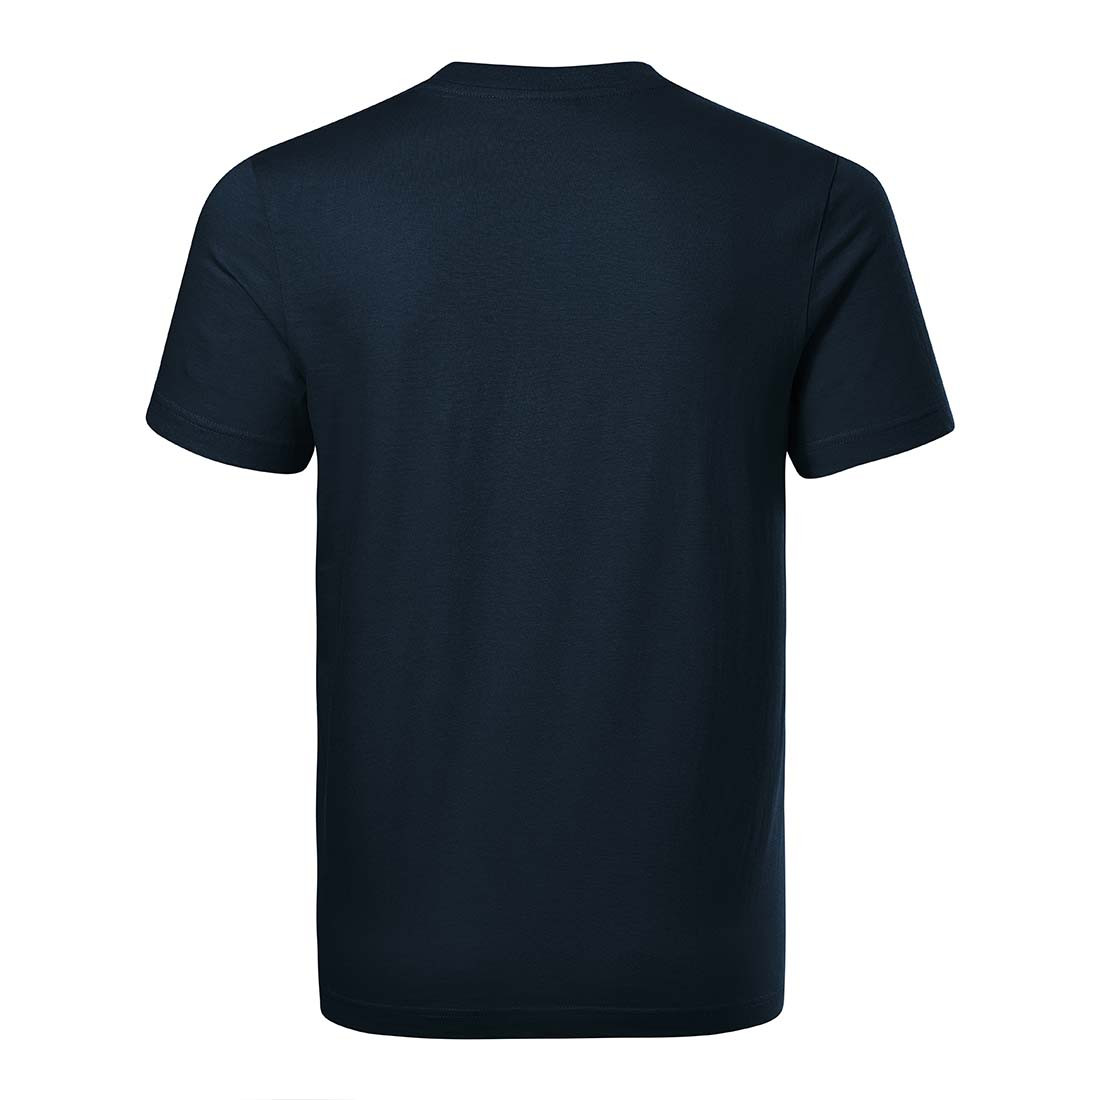 Tee-shirt unisex BASE - Les vêtements de protection